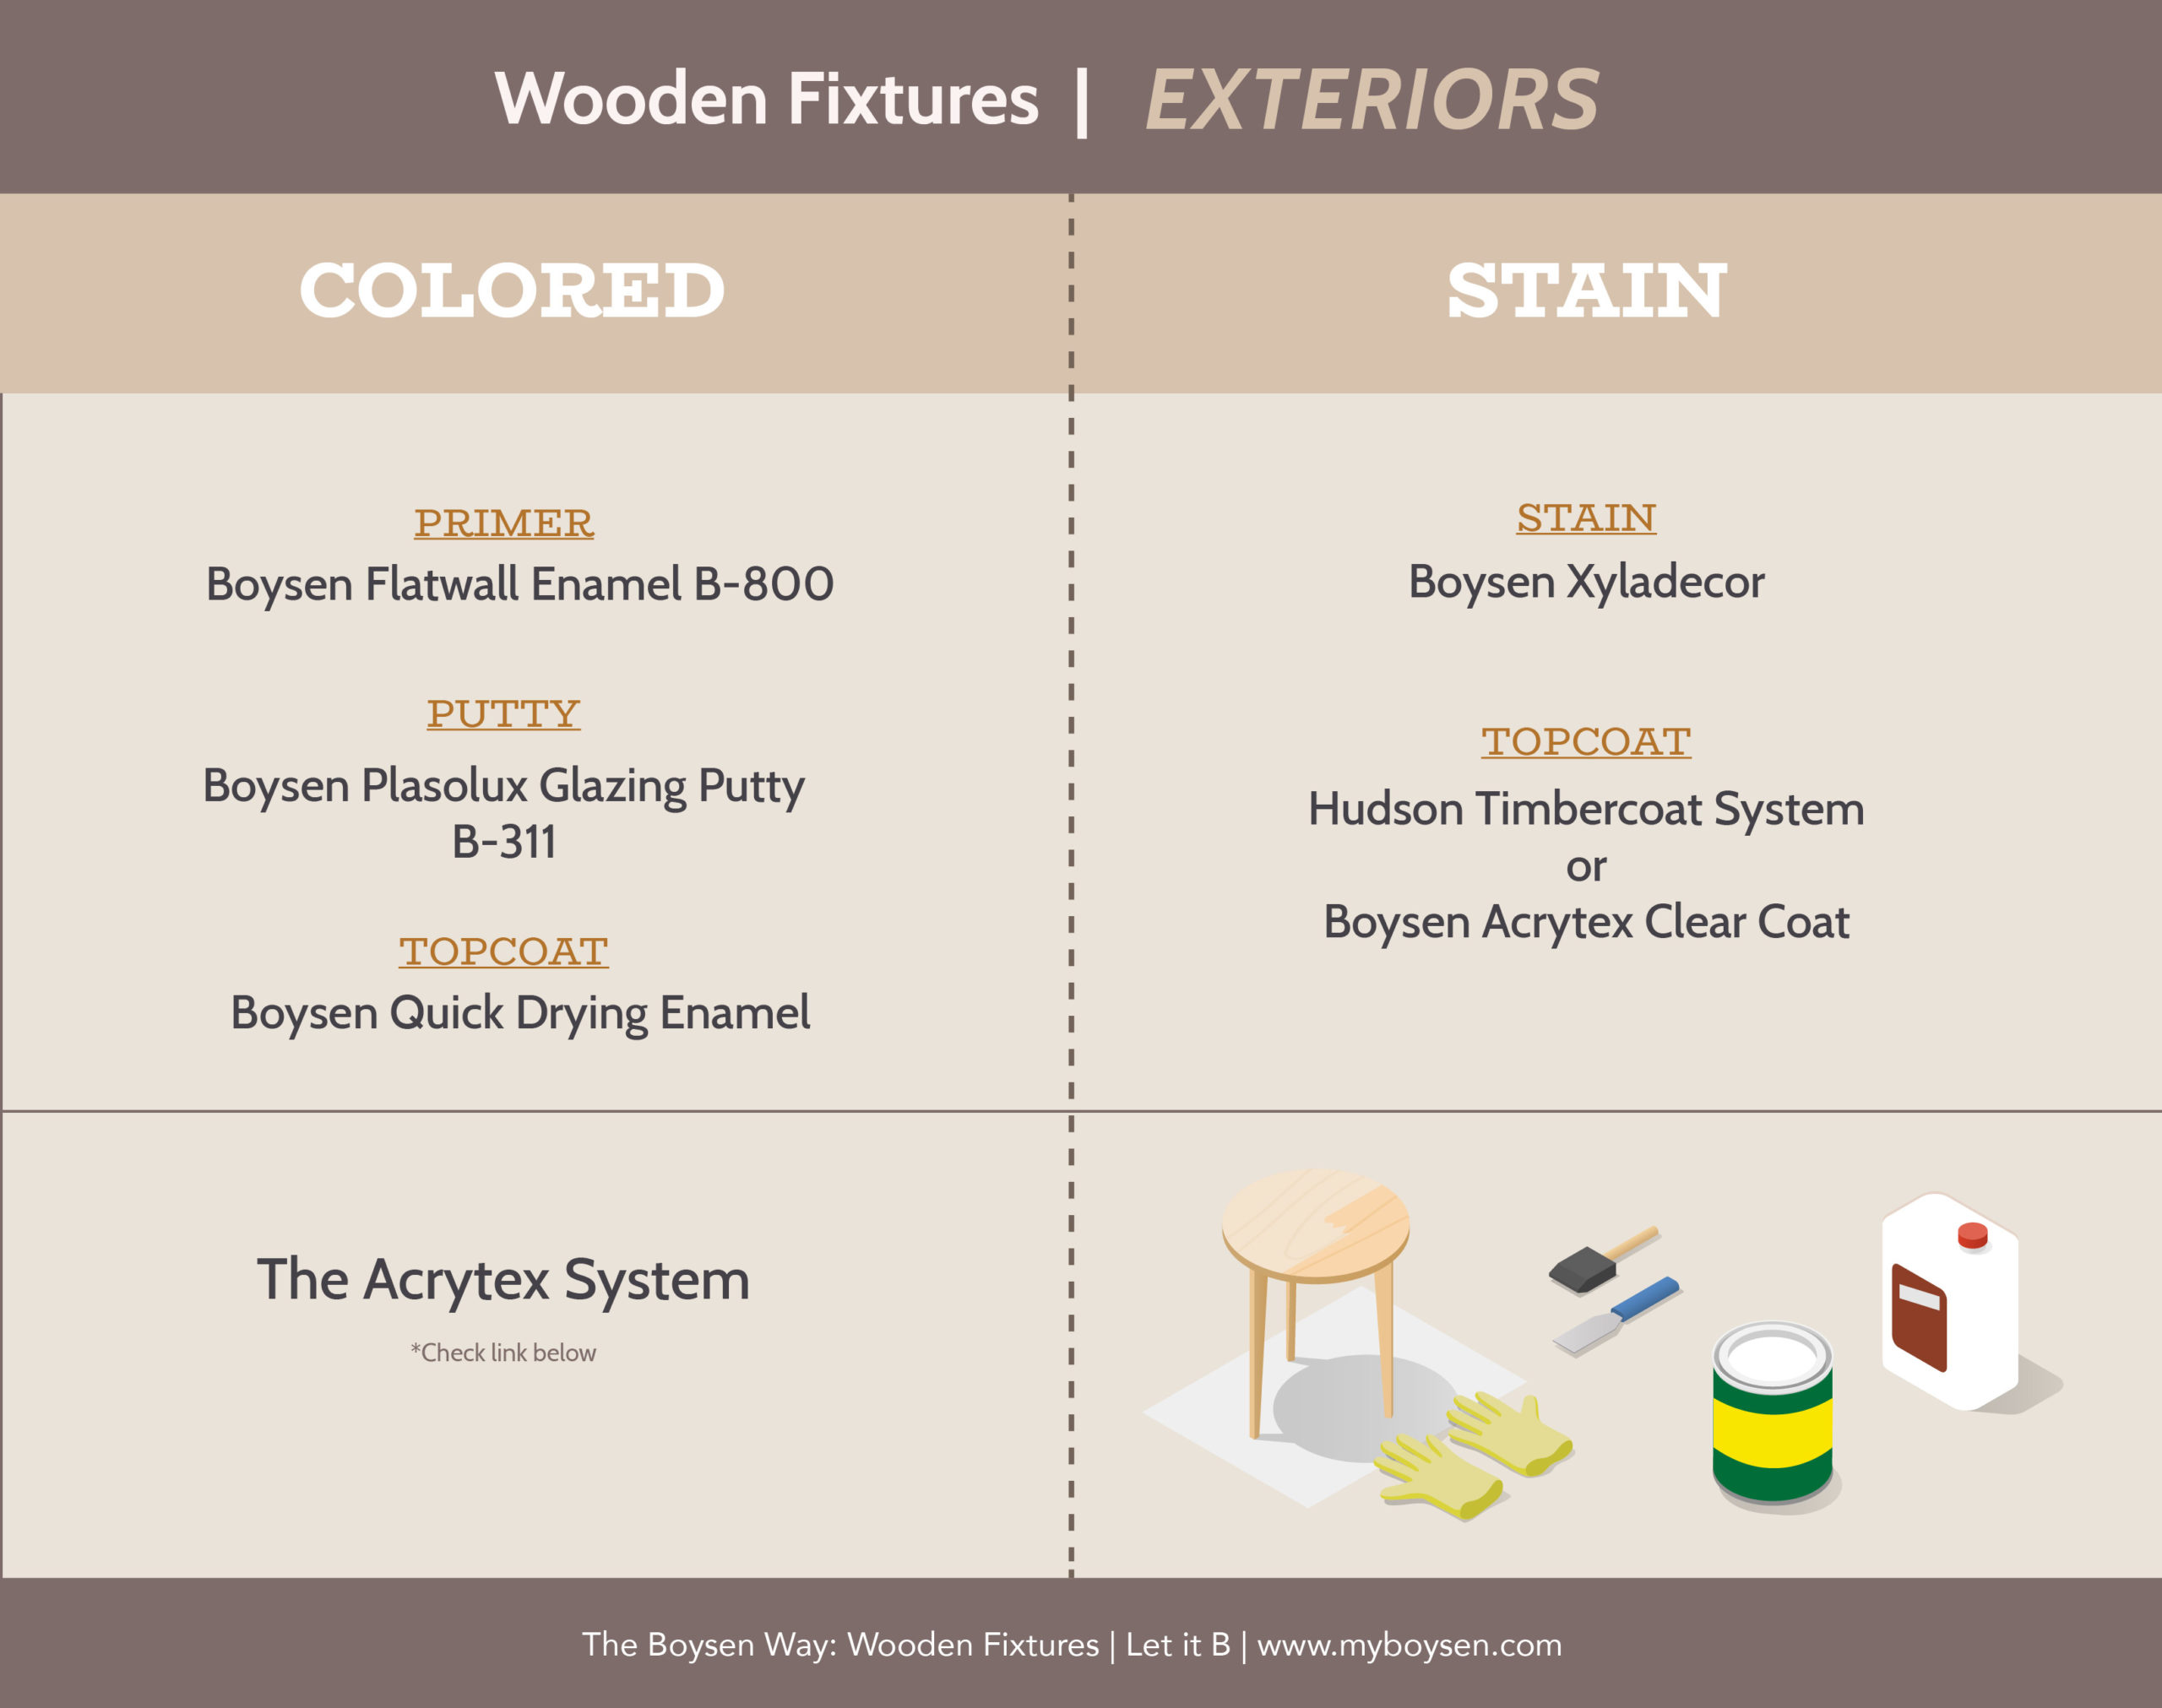 The Boysen Way: Wooden Fixtures | MyBoysen